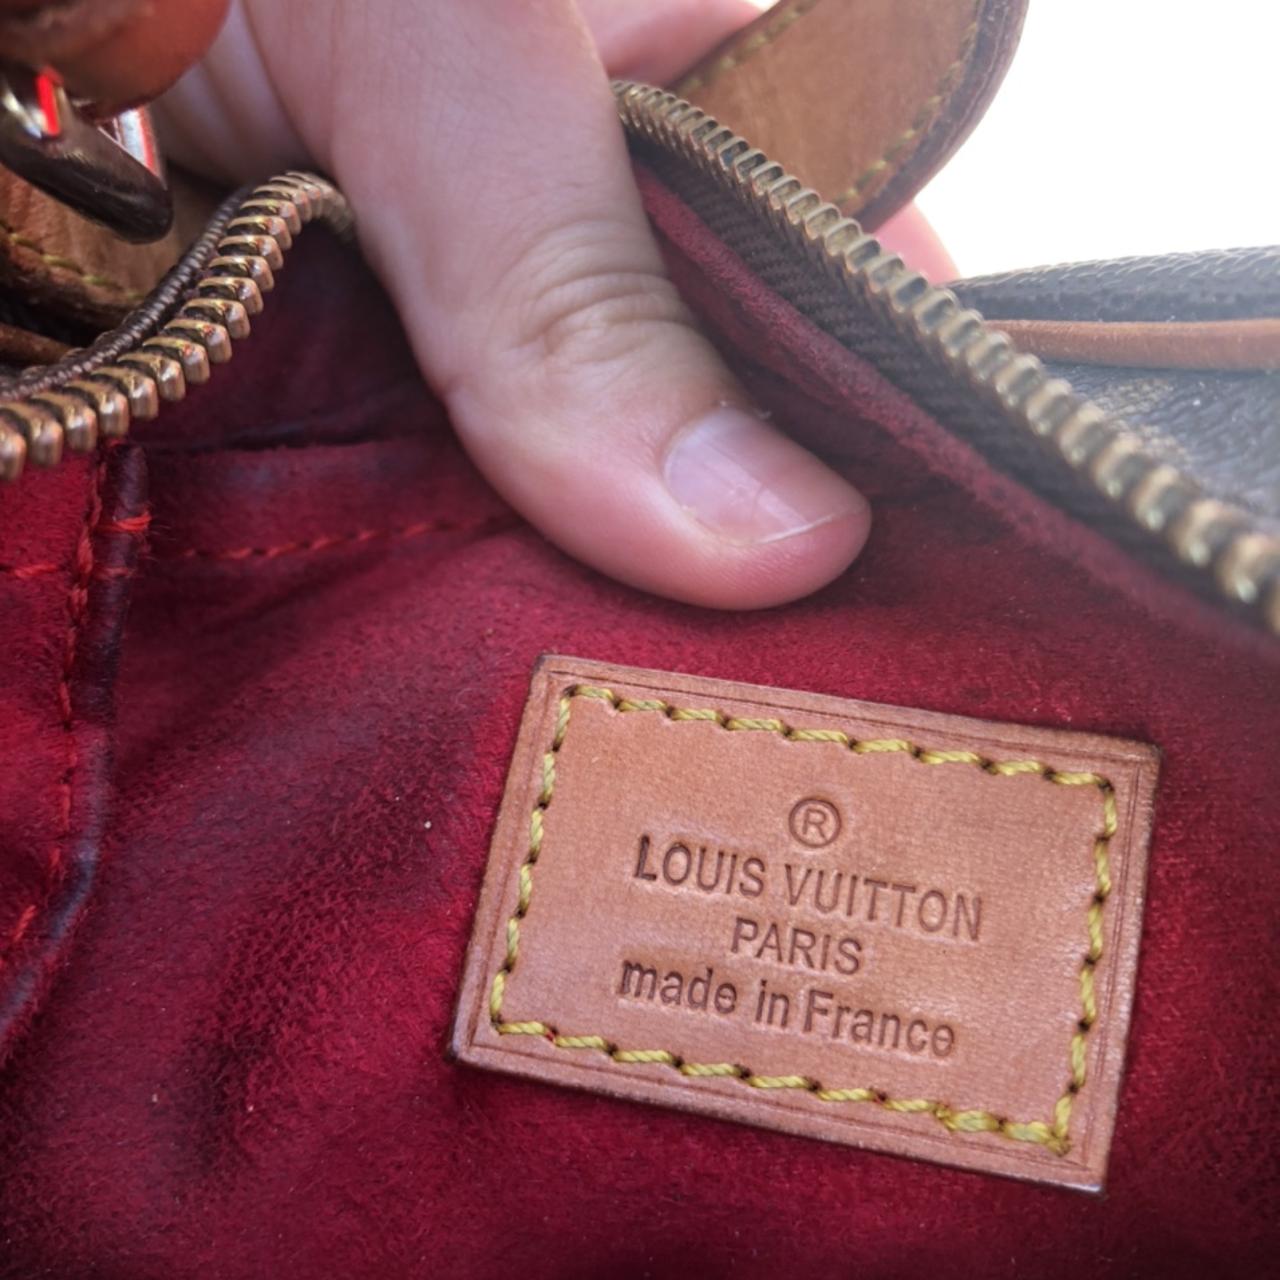 Vintage a Louis Vuitton fanny pack! Beautiful piece! - Depop